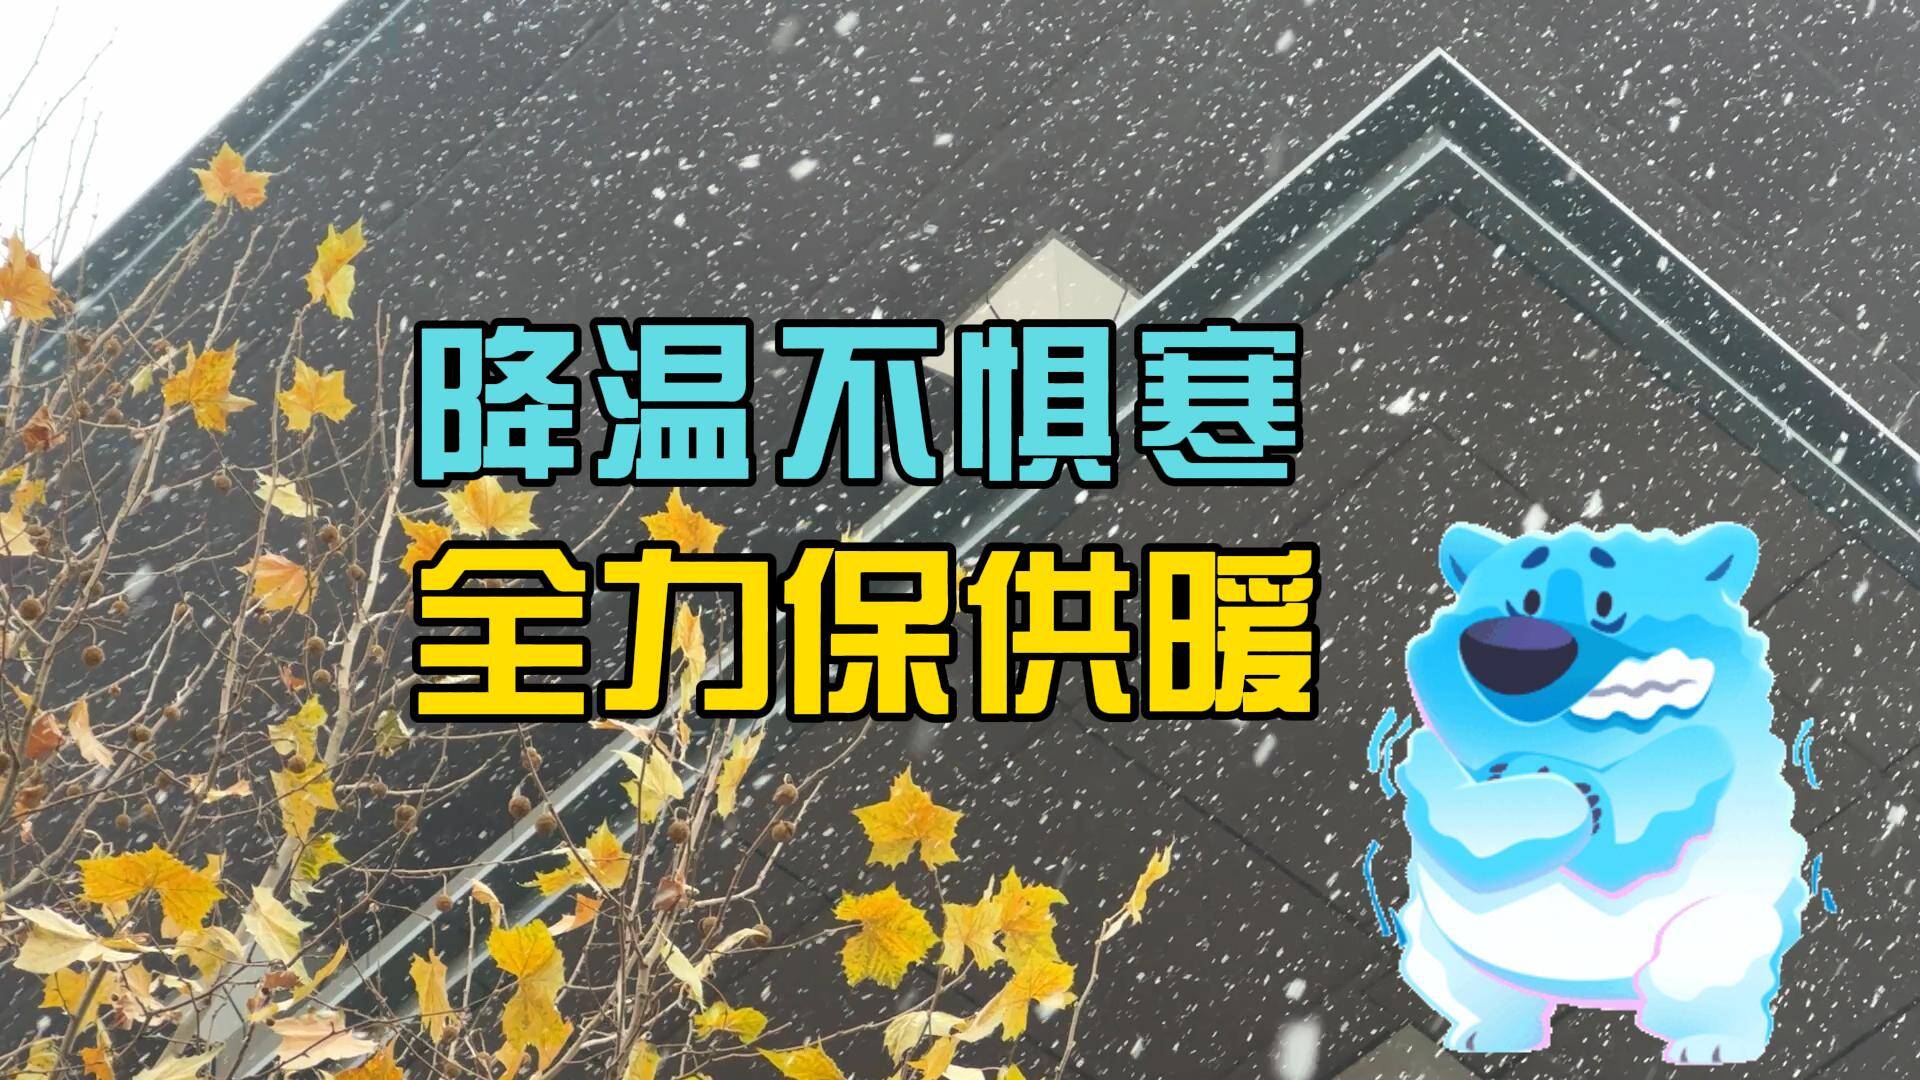 【邹视频·新闻】73秒|降温不惧寒 全力保供暖